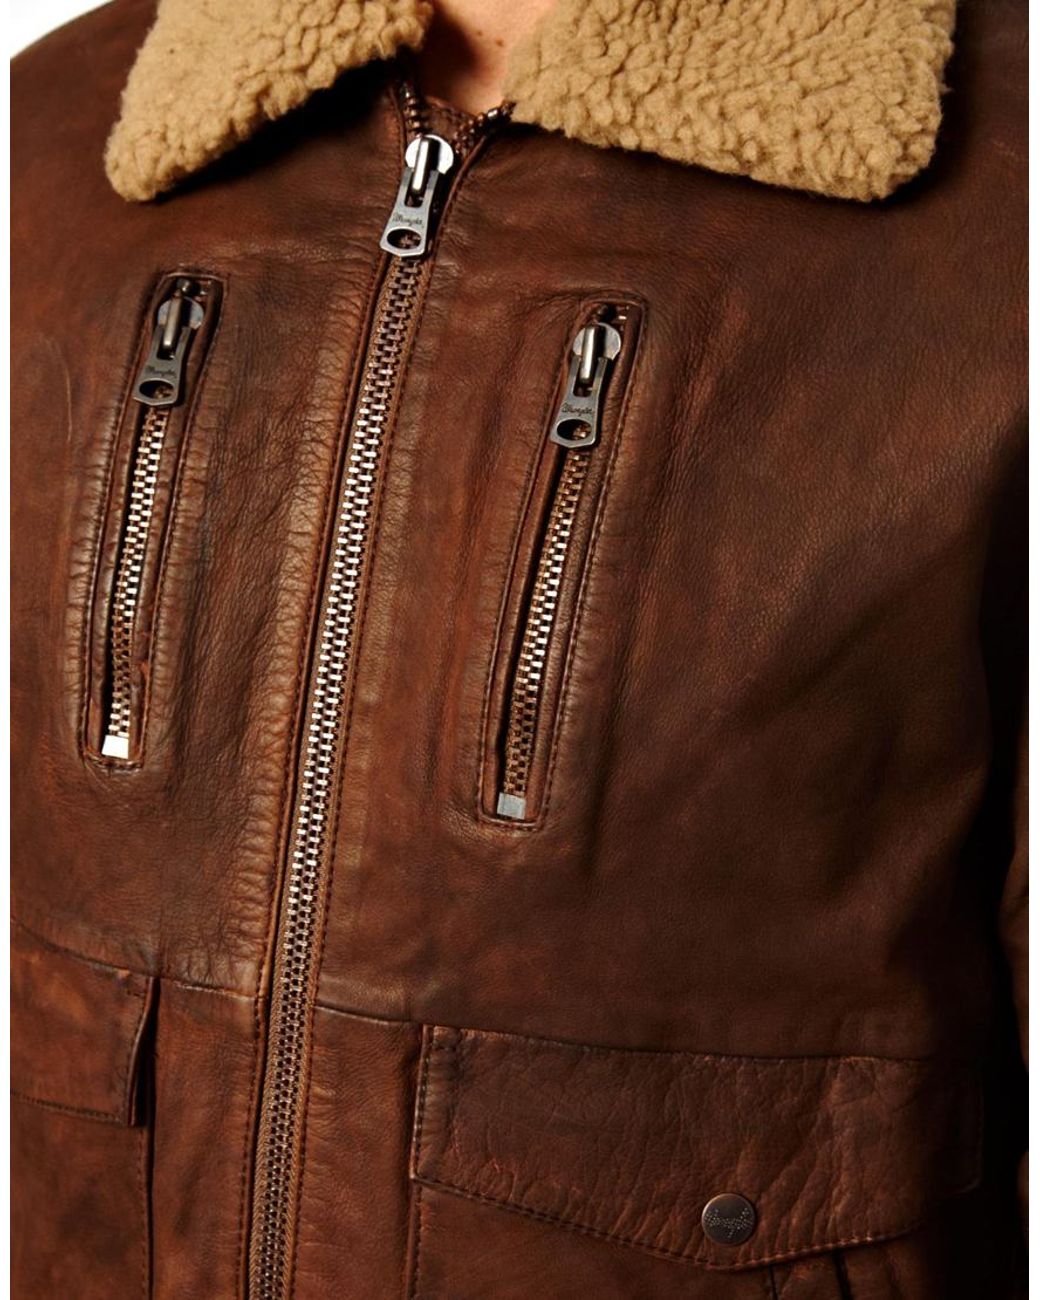 Arriba 33+ imagen wrangler brown leather jacket - Thptnganamst.edu.vn